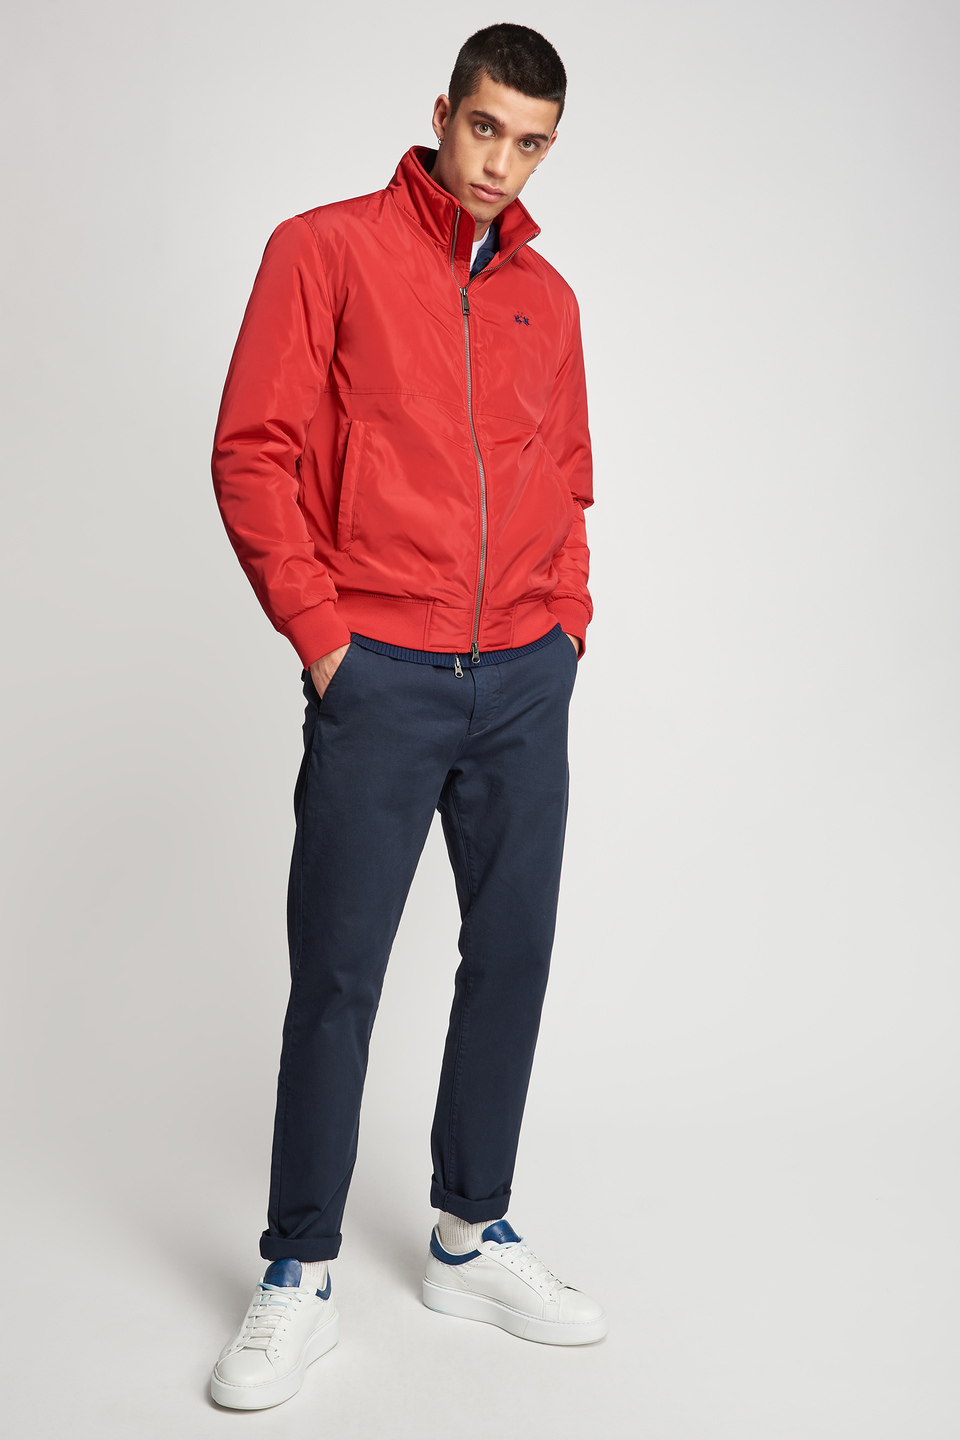 Nylon jacket | La Martina - Official Online Shop